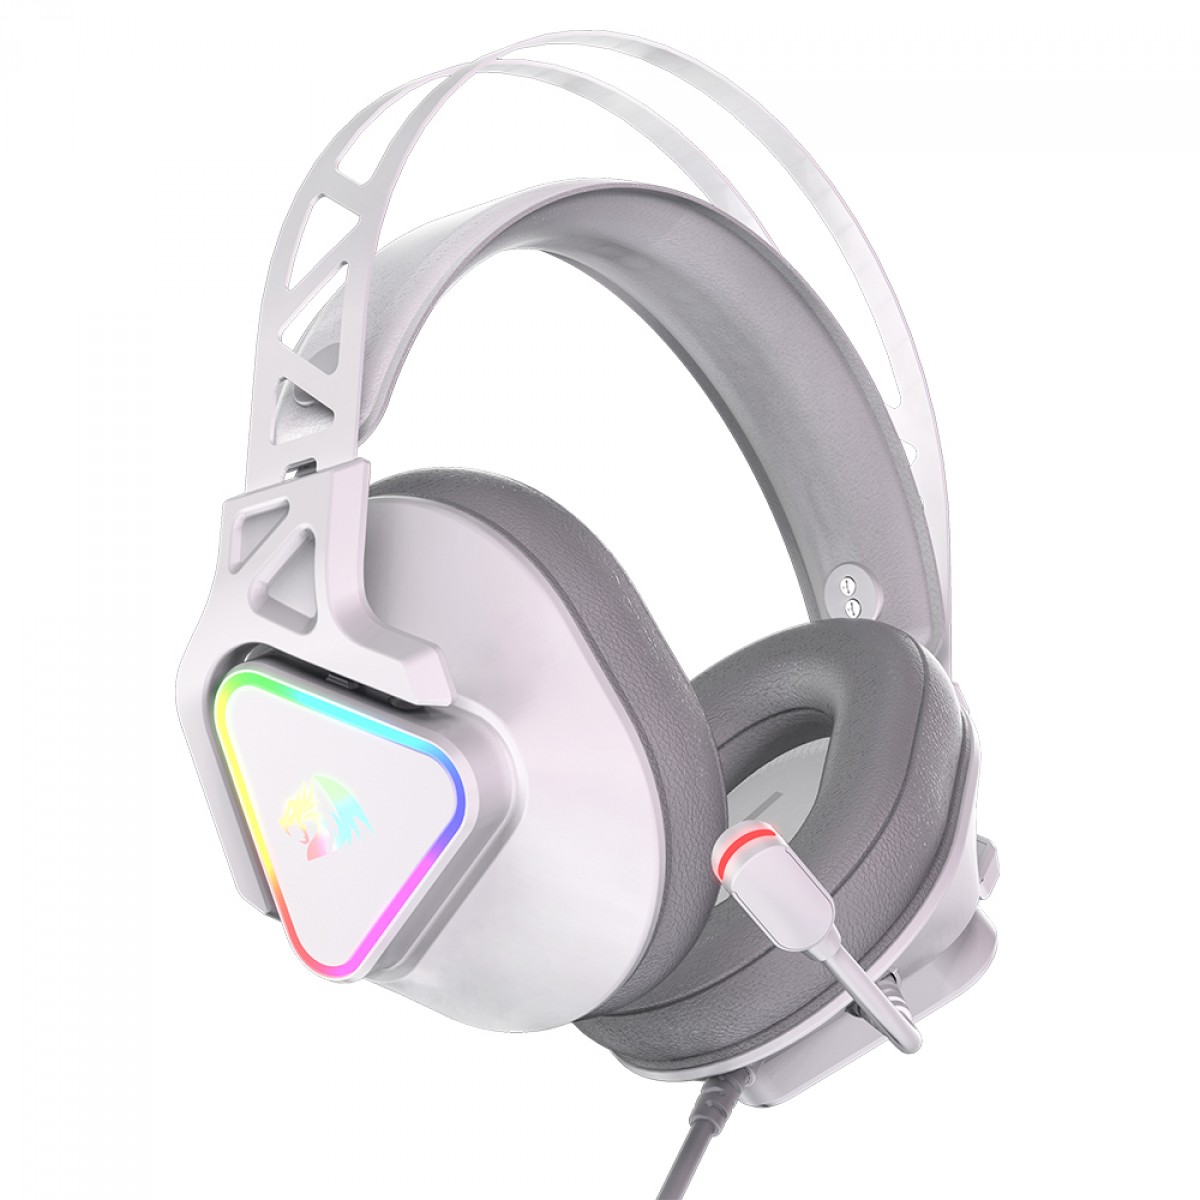 Fones de ouvido com som surround, RGB Fone de ouvido com som